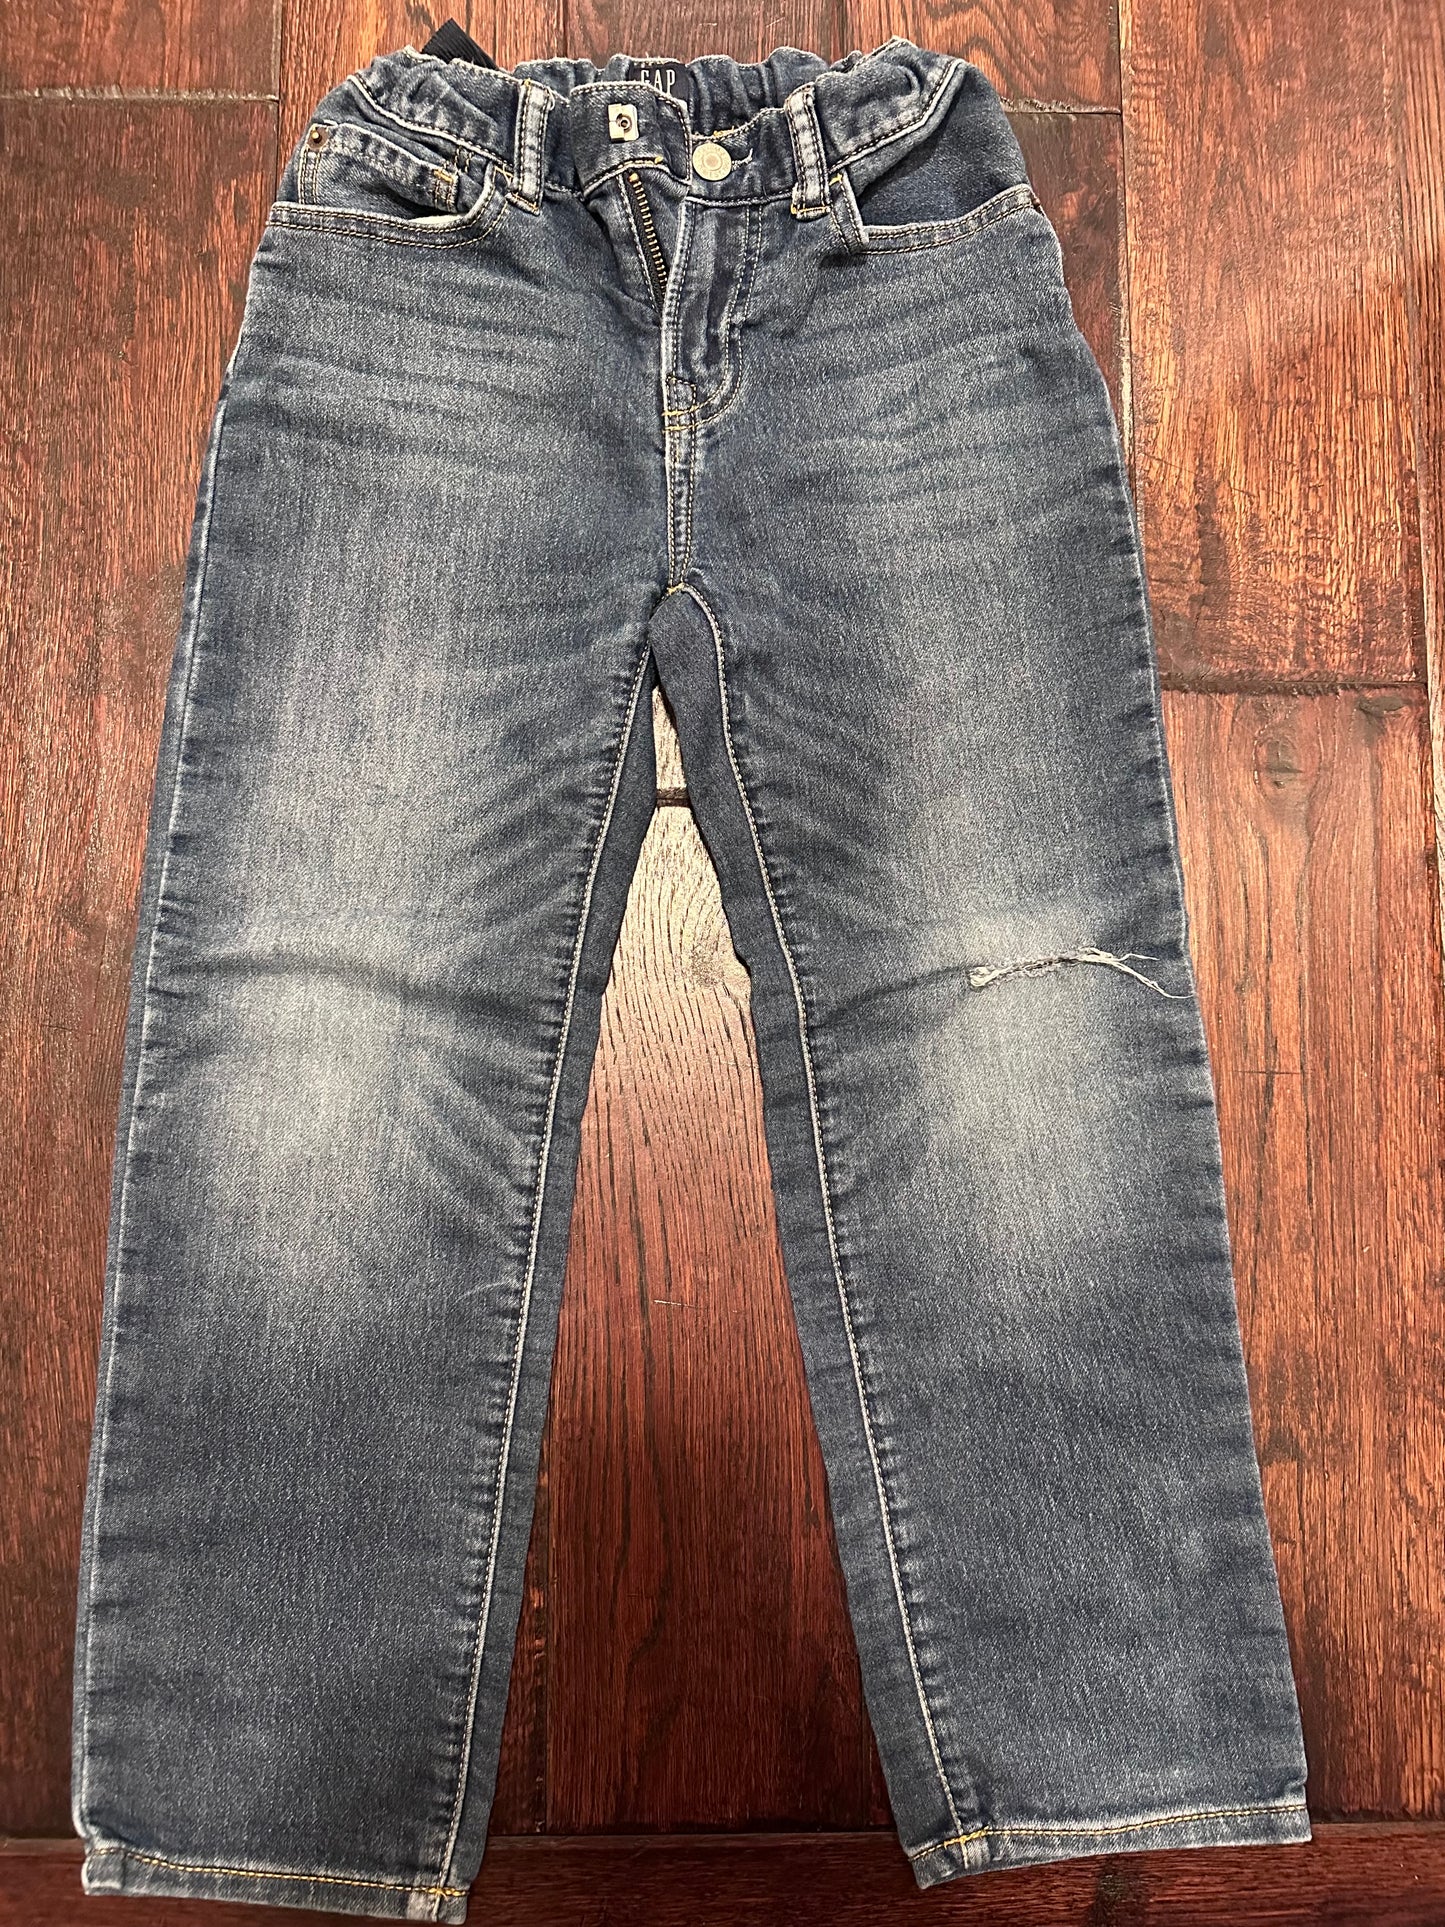 Gap - Dark Wash Adjustable Waist Jeans - Boys Size 7